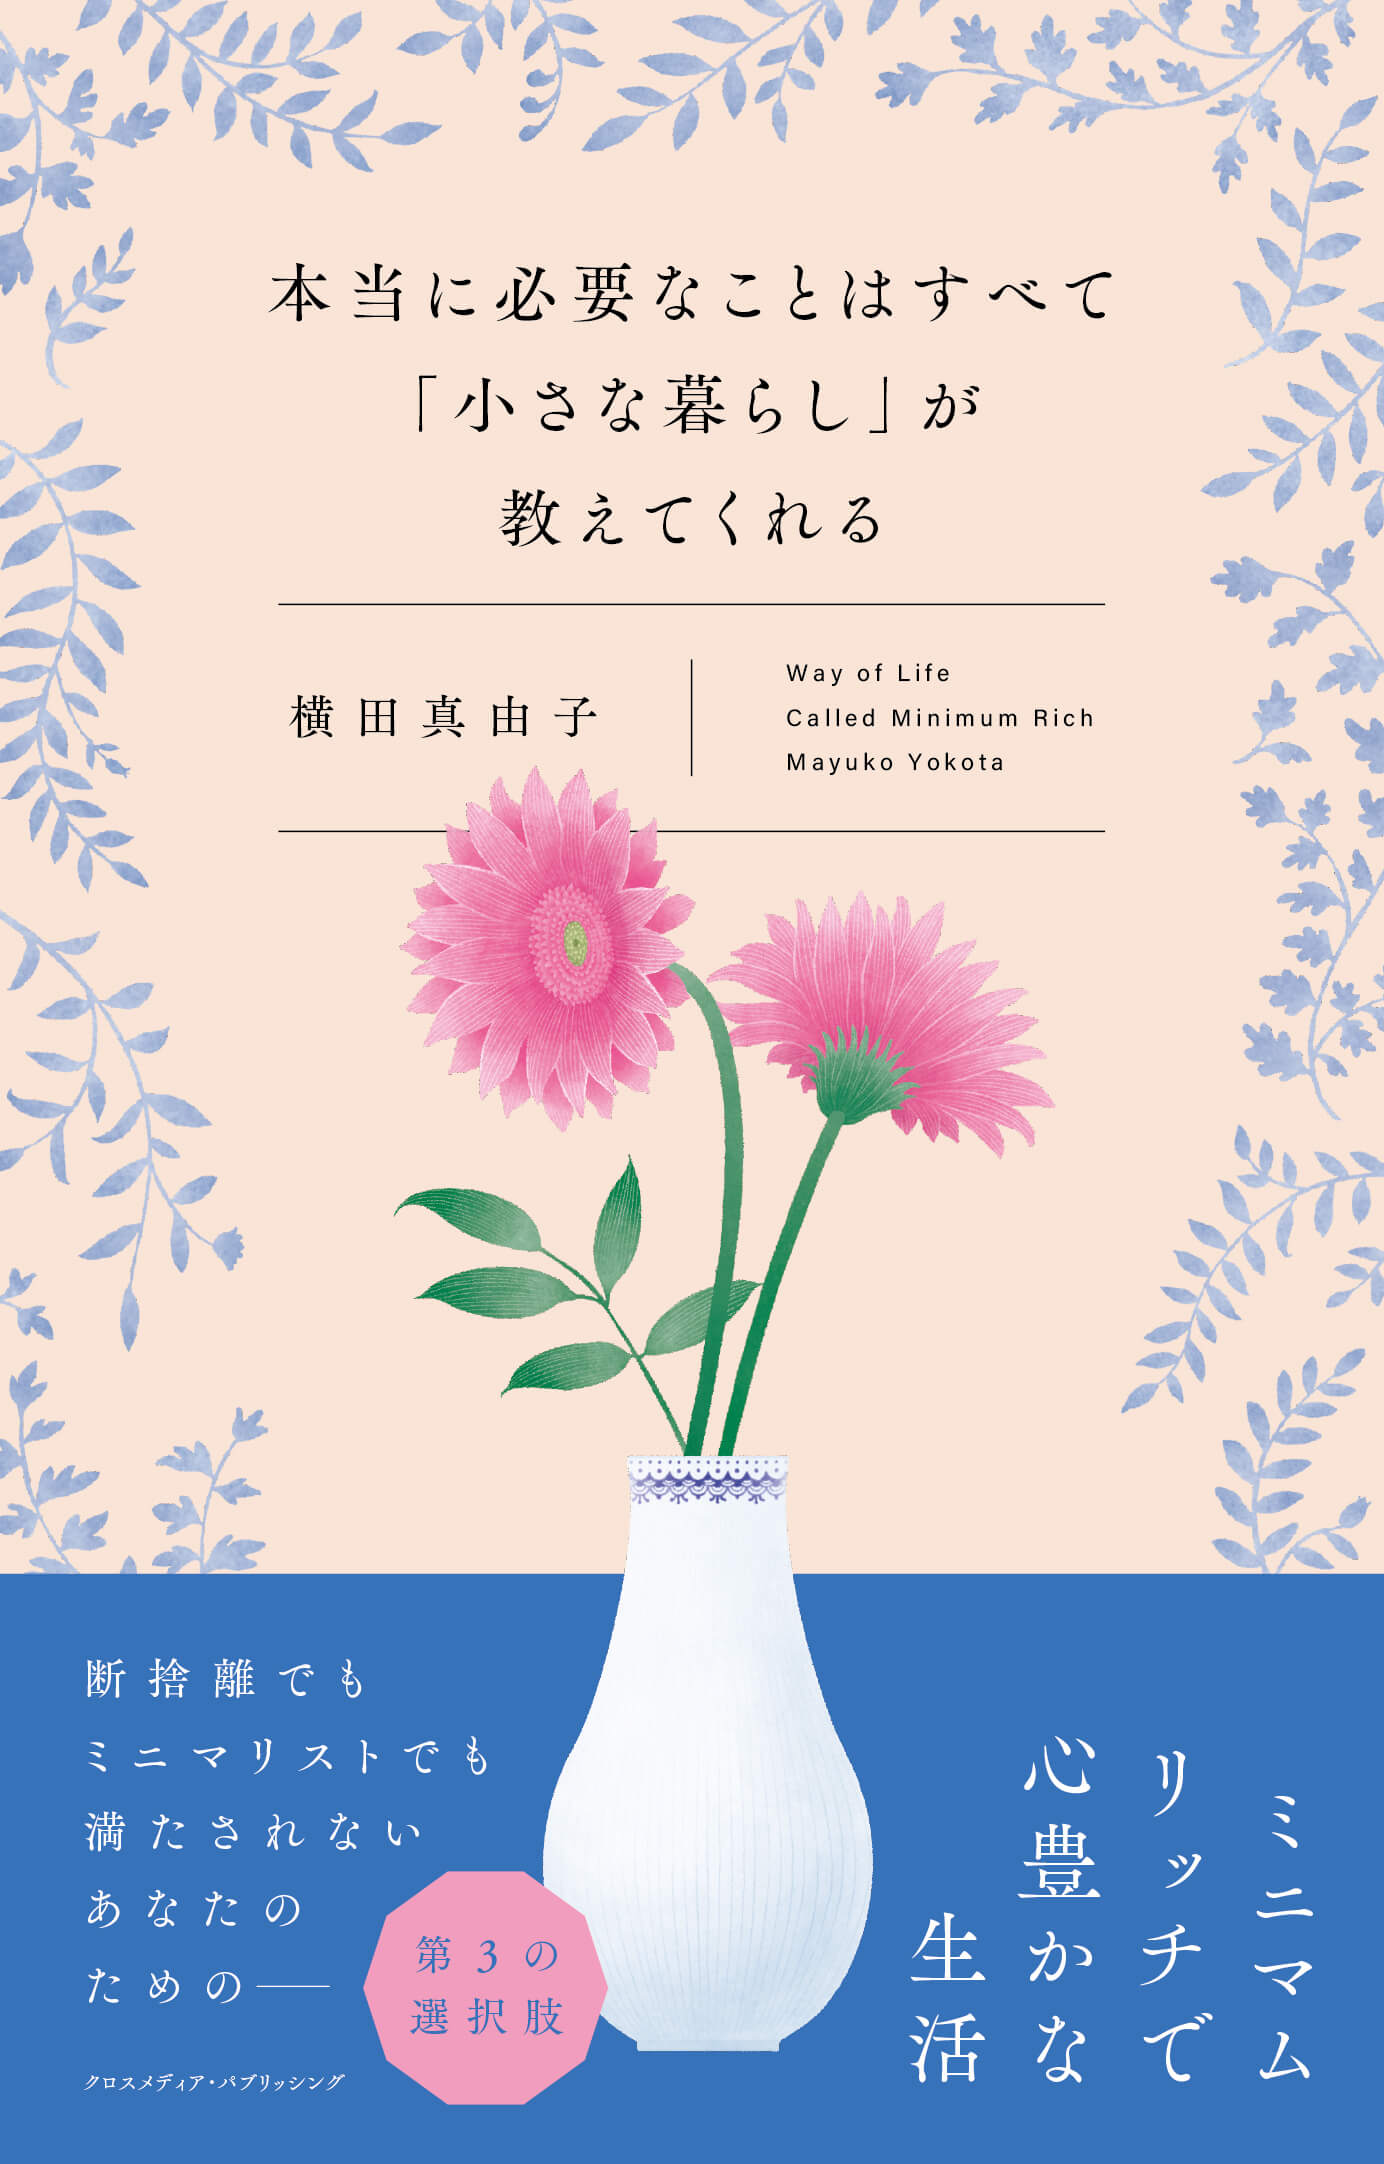 横田真由子の書籍「本当に必要なことはすべて「小さな暮らし」が教えてくれる」